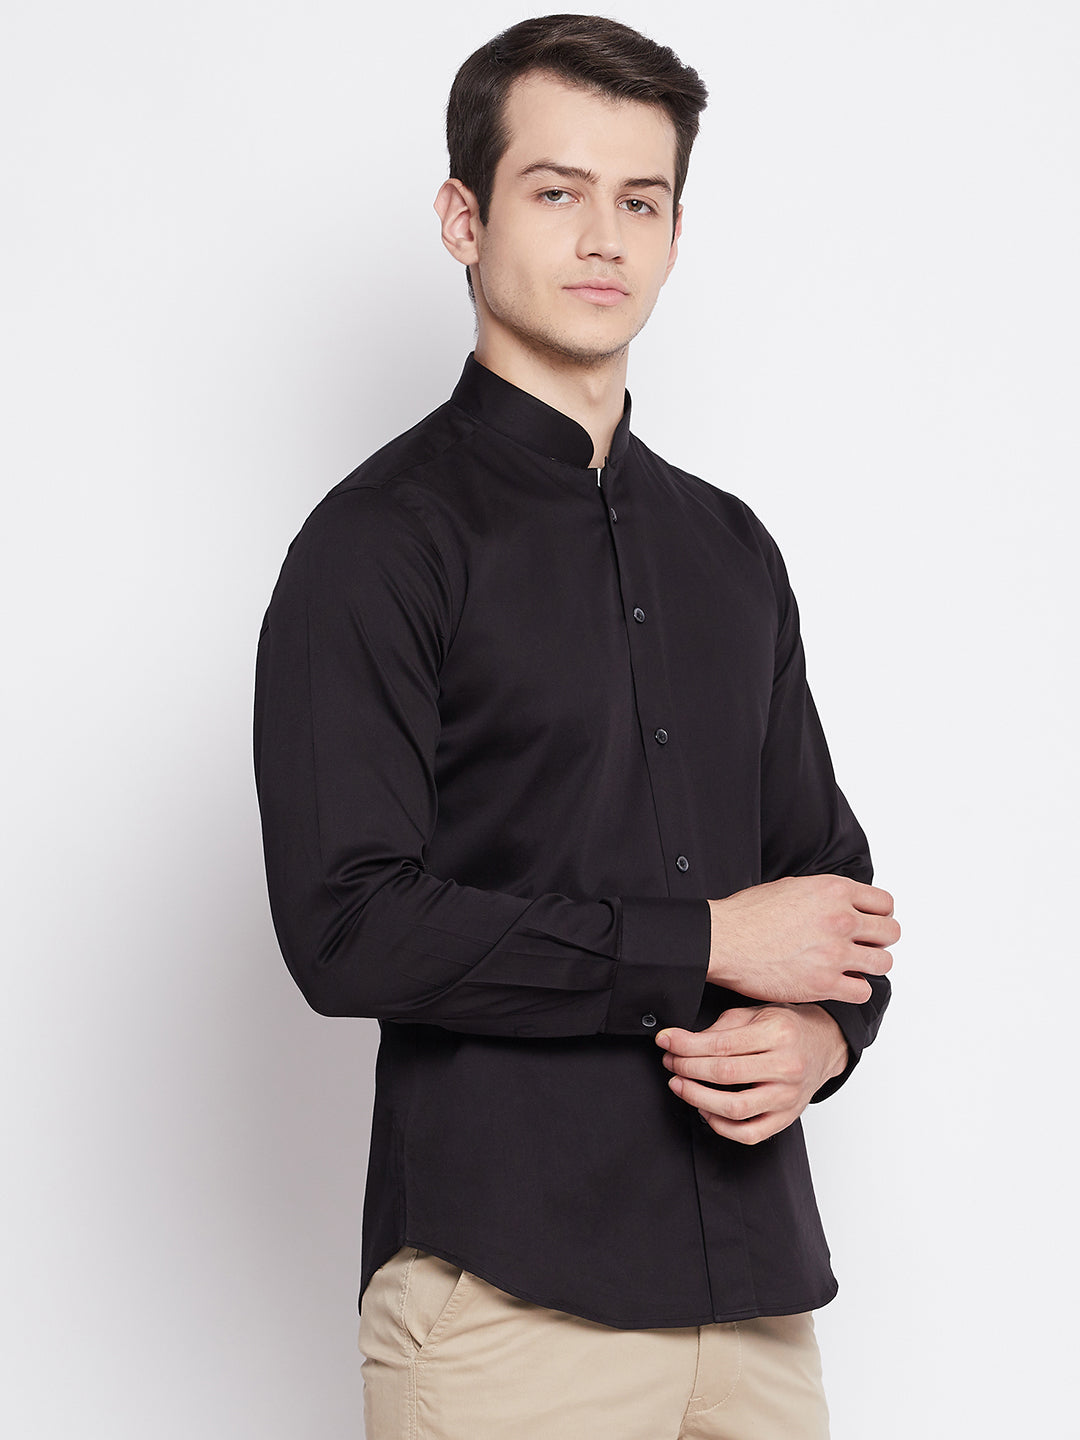 Jet Black Satin Cotton Dress Shirt with Mandarin Collar